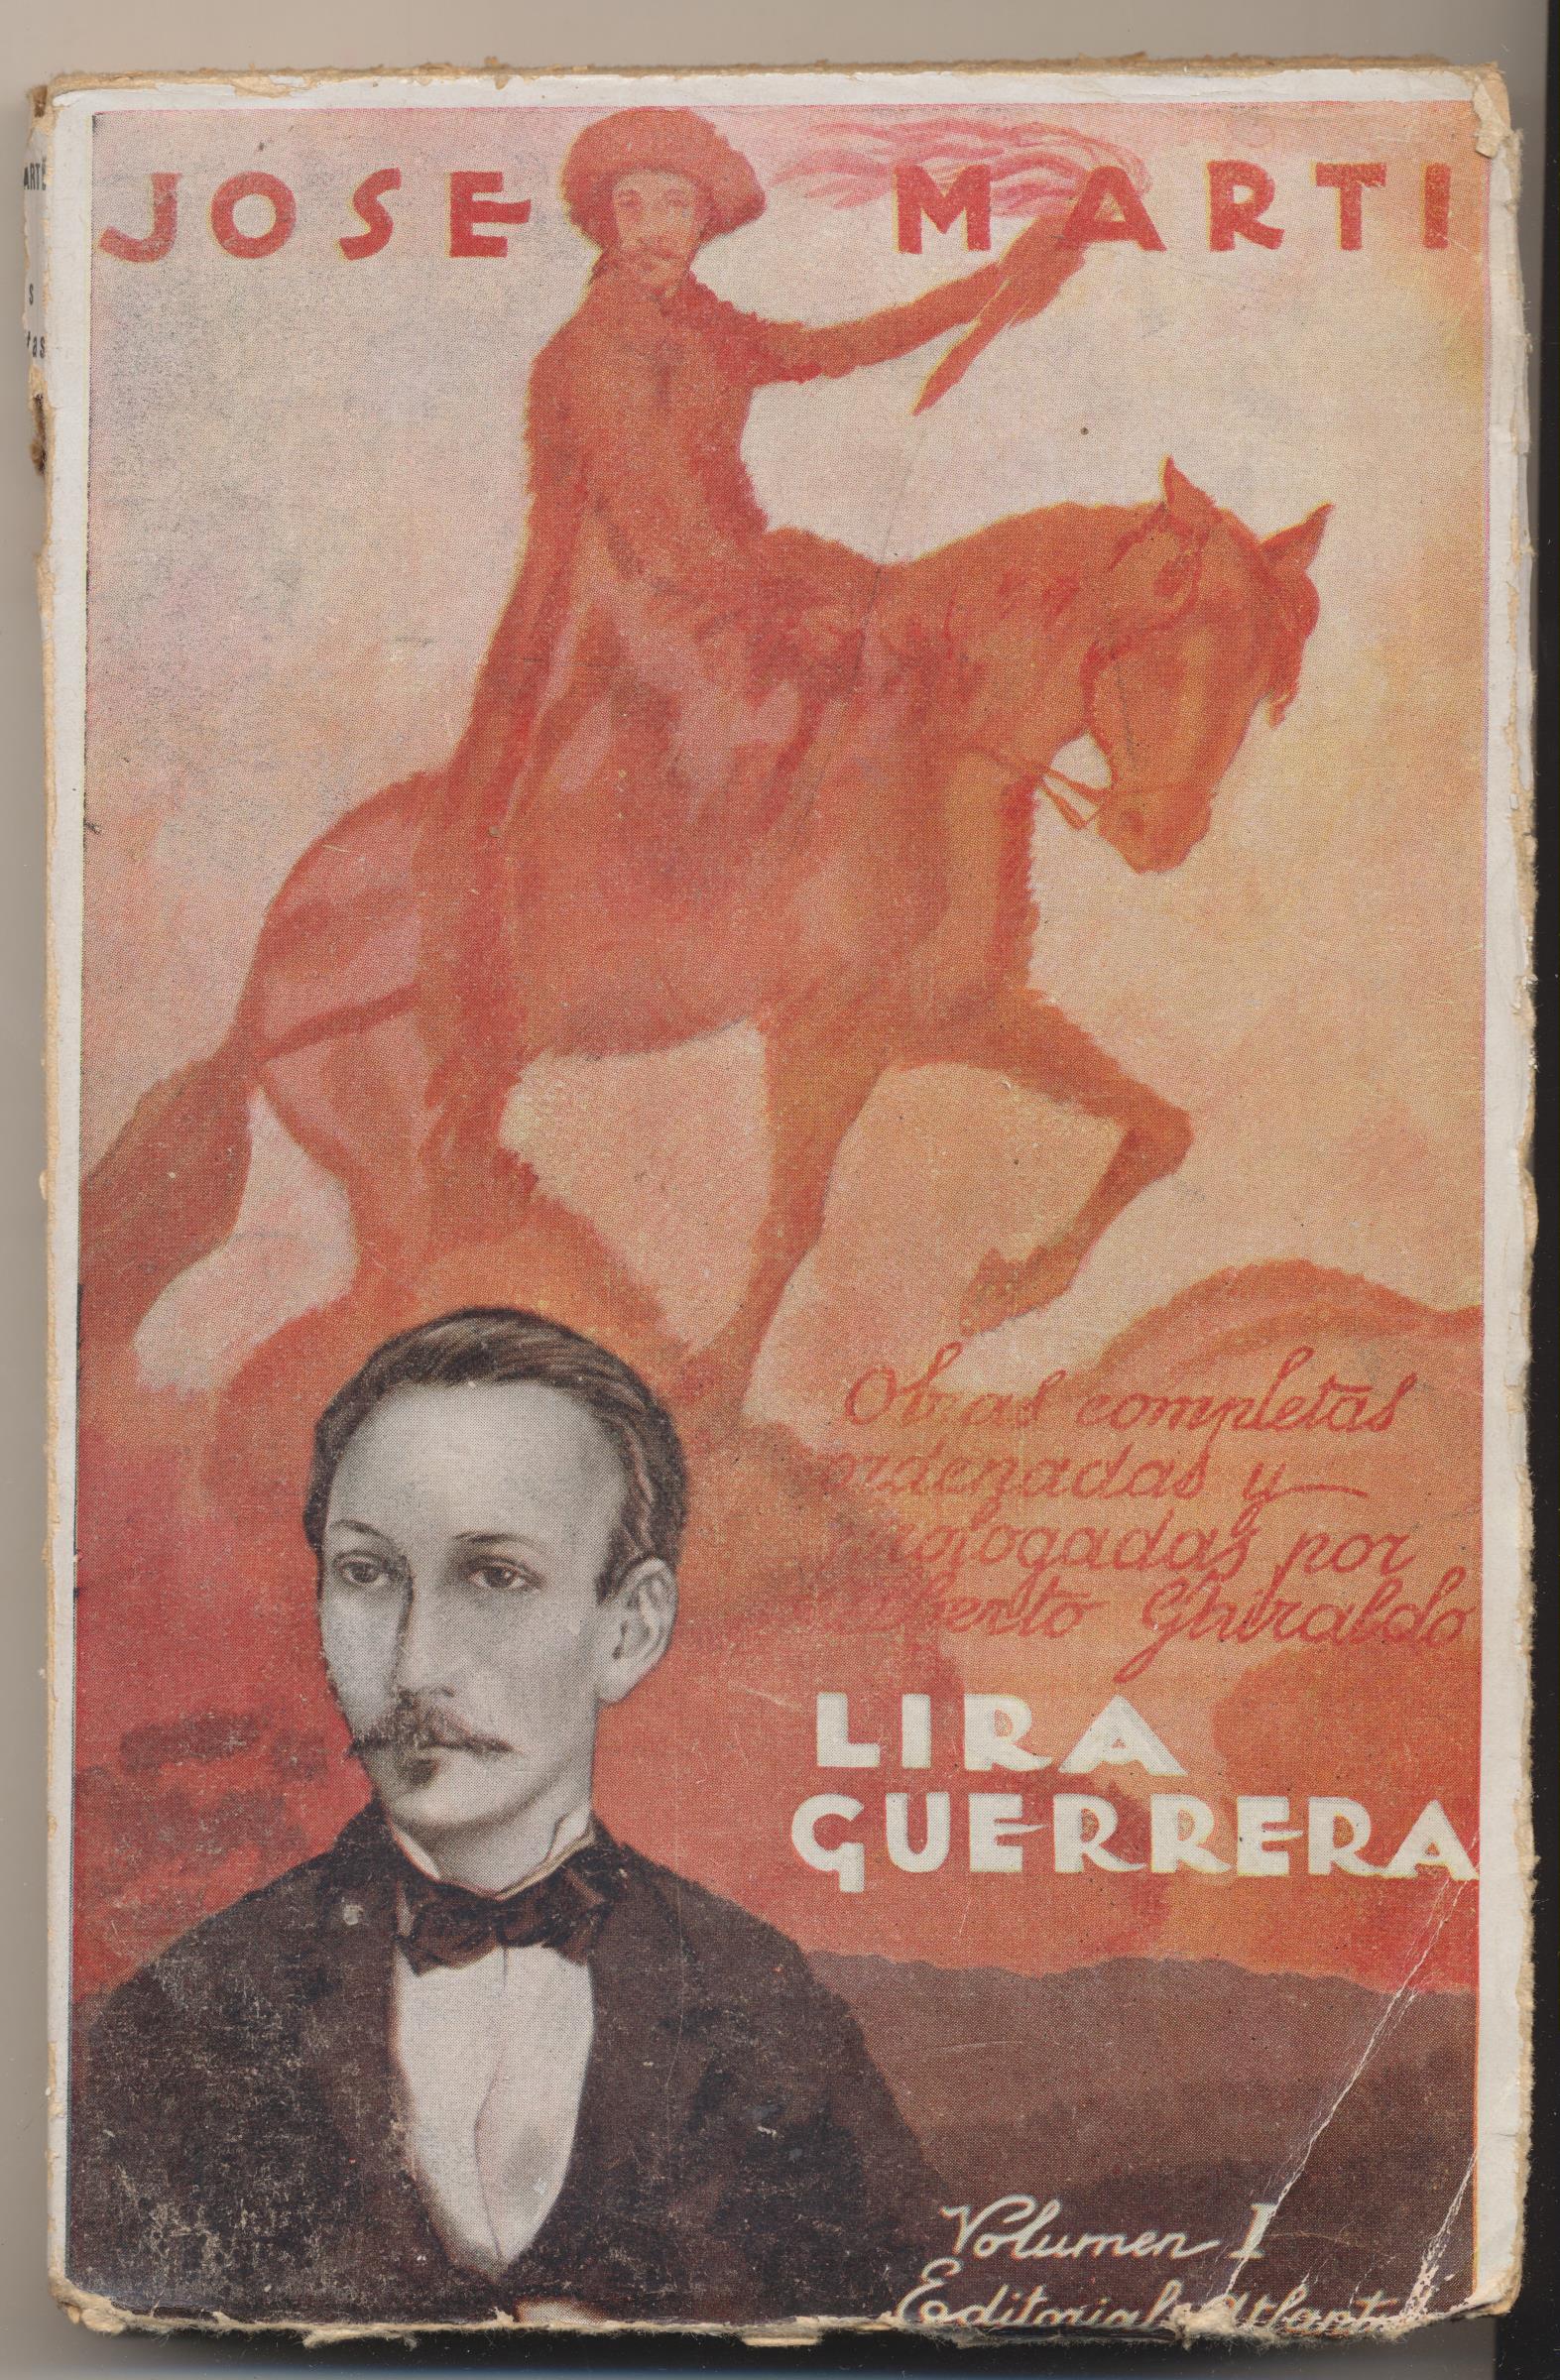 José Martí. Lira Guerrera. Obras completas ordenadas y prologadas por Alberto Ghiraldo. Editorial Atlántida